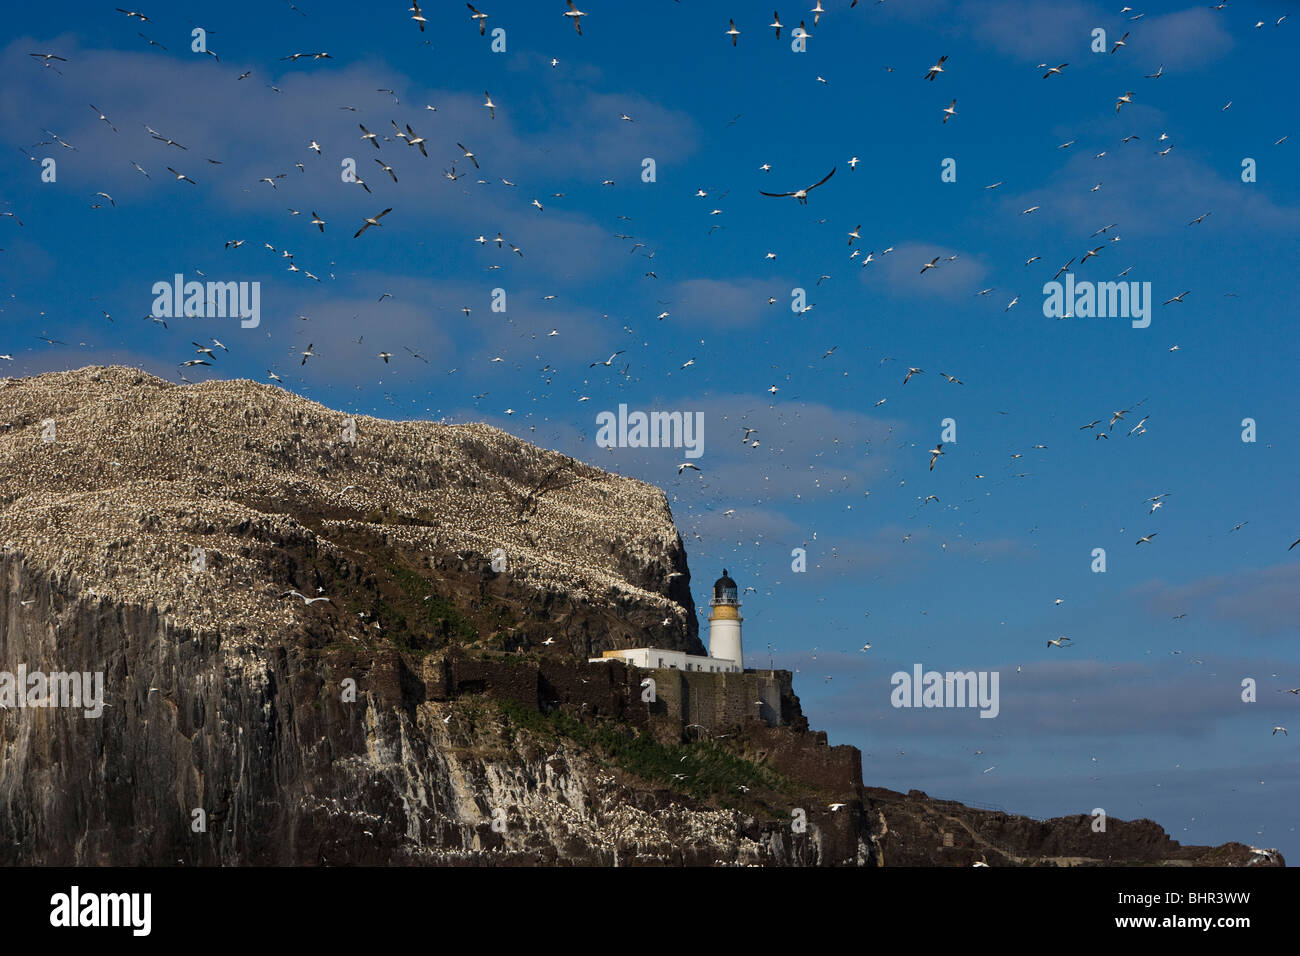 Bass Rock Tölpelkolonie zeigt des Felsens, darunter des Leuchtturms, umgeben von den Tölpel Kolonie und blauer Himmel voller Tölpel fliegen in und out. Stockfoto